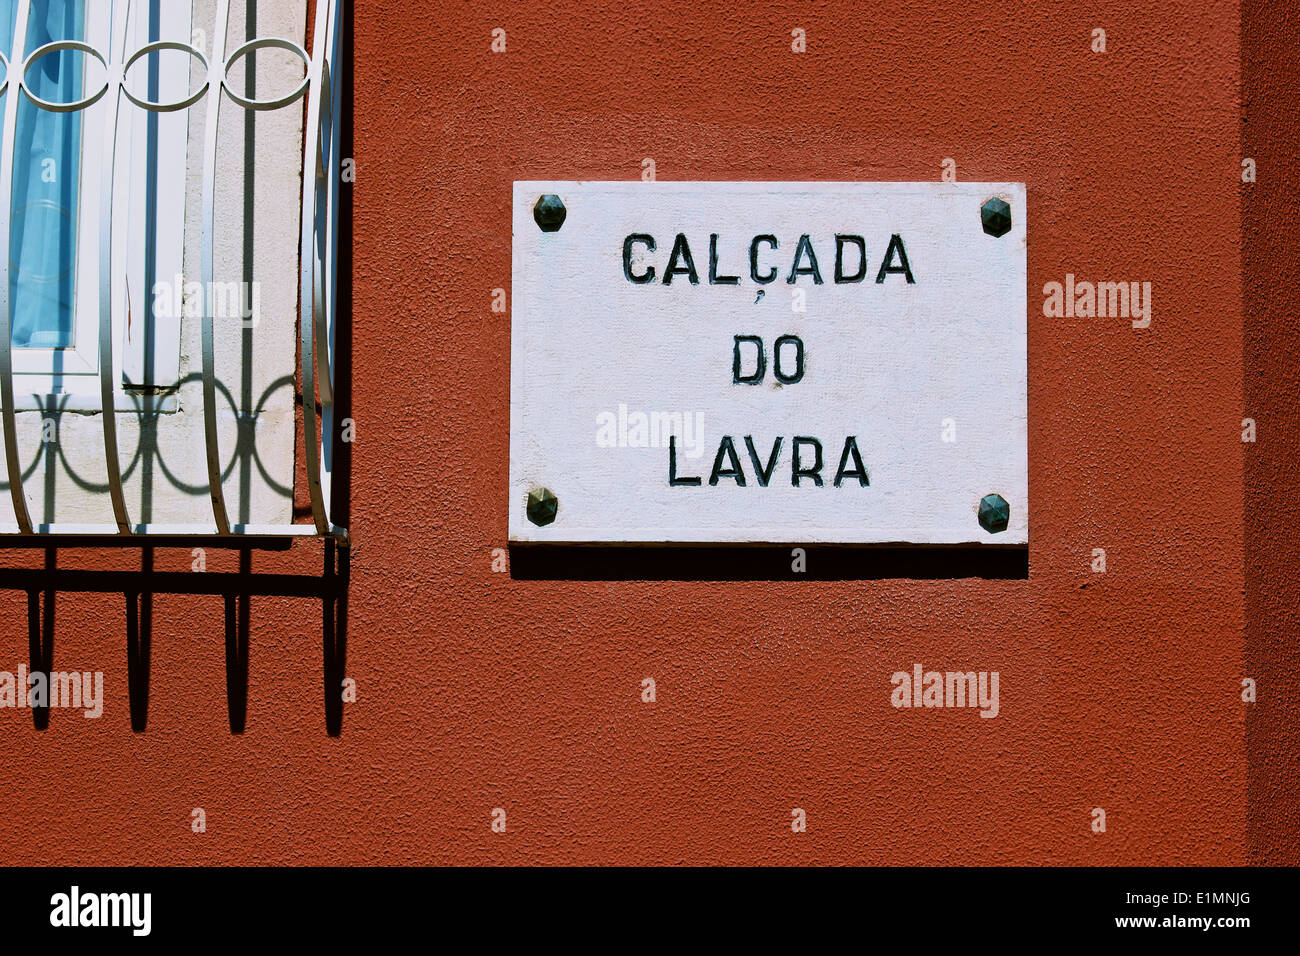 Il nome della strada segno e nella finestra dettaglio Calcada do Lavra Lisbona Portogallo Europa occidentale Foto Stock